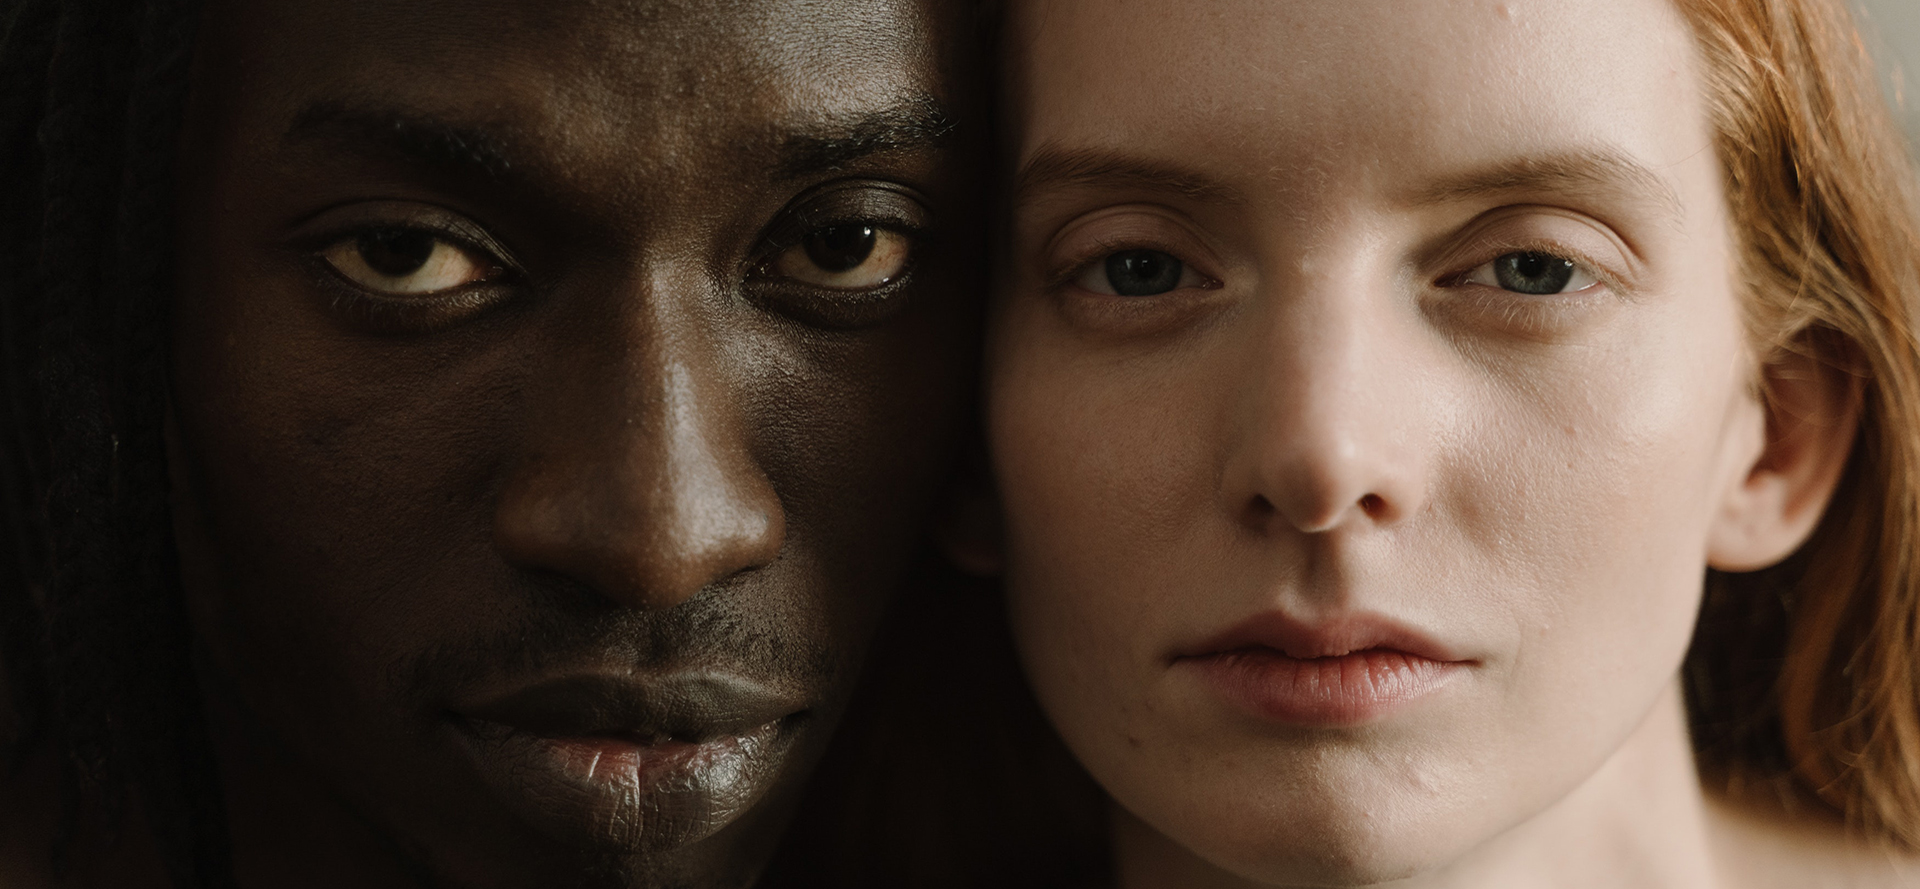 Um retrato face a face de um homem negro e de uma mulher branca.